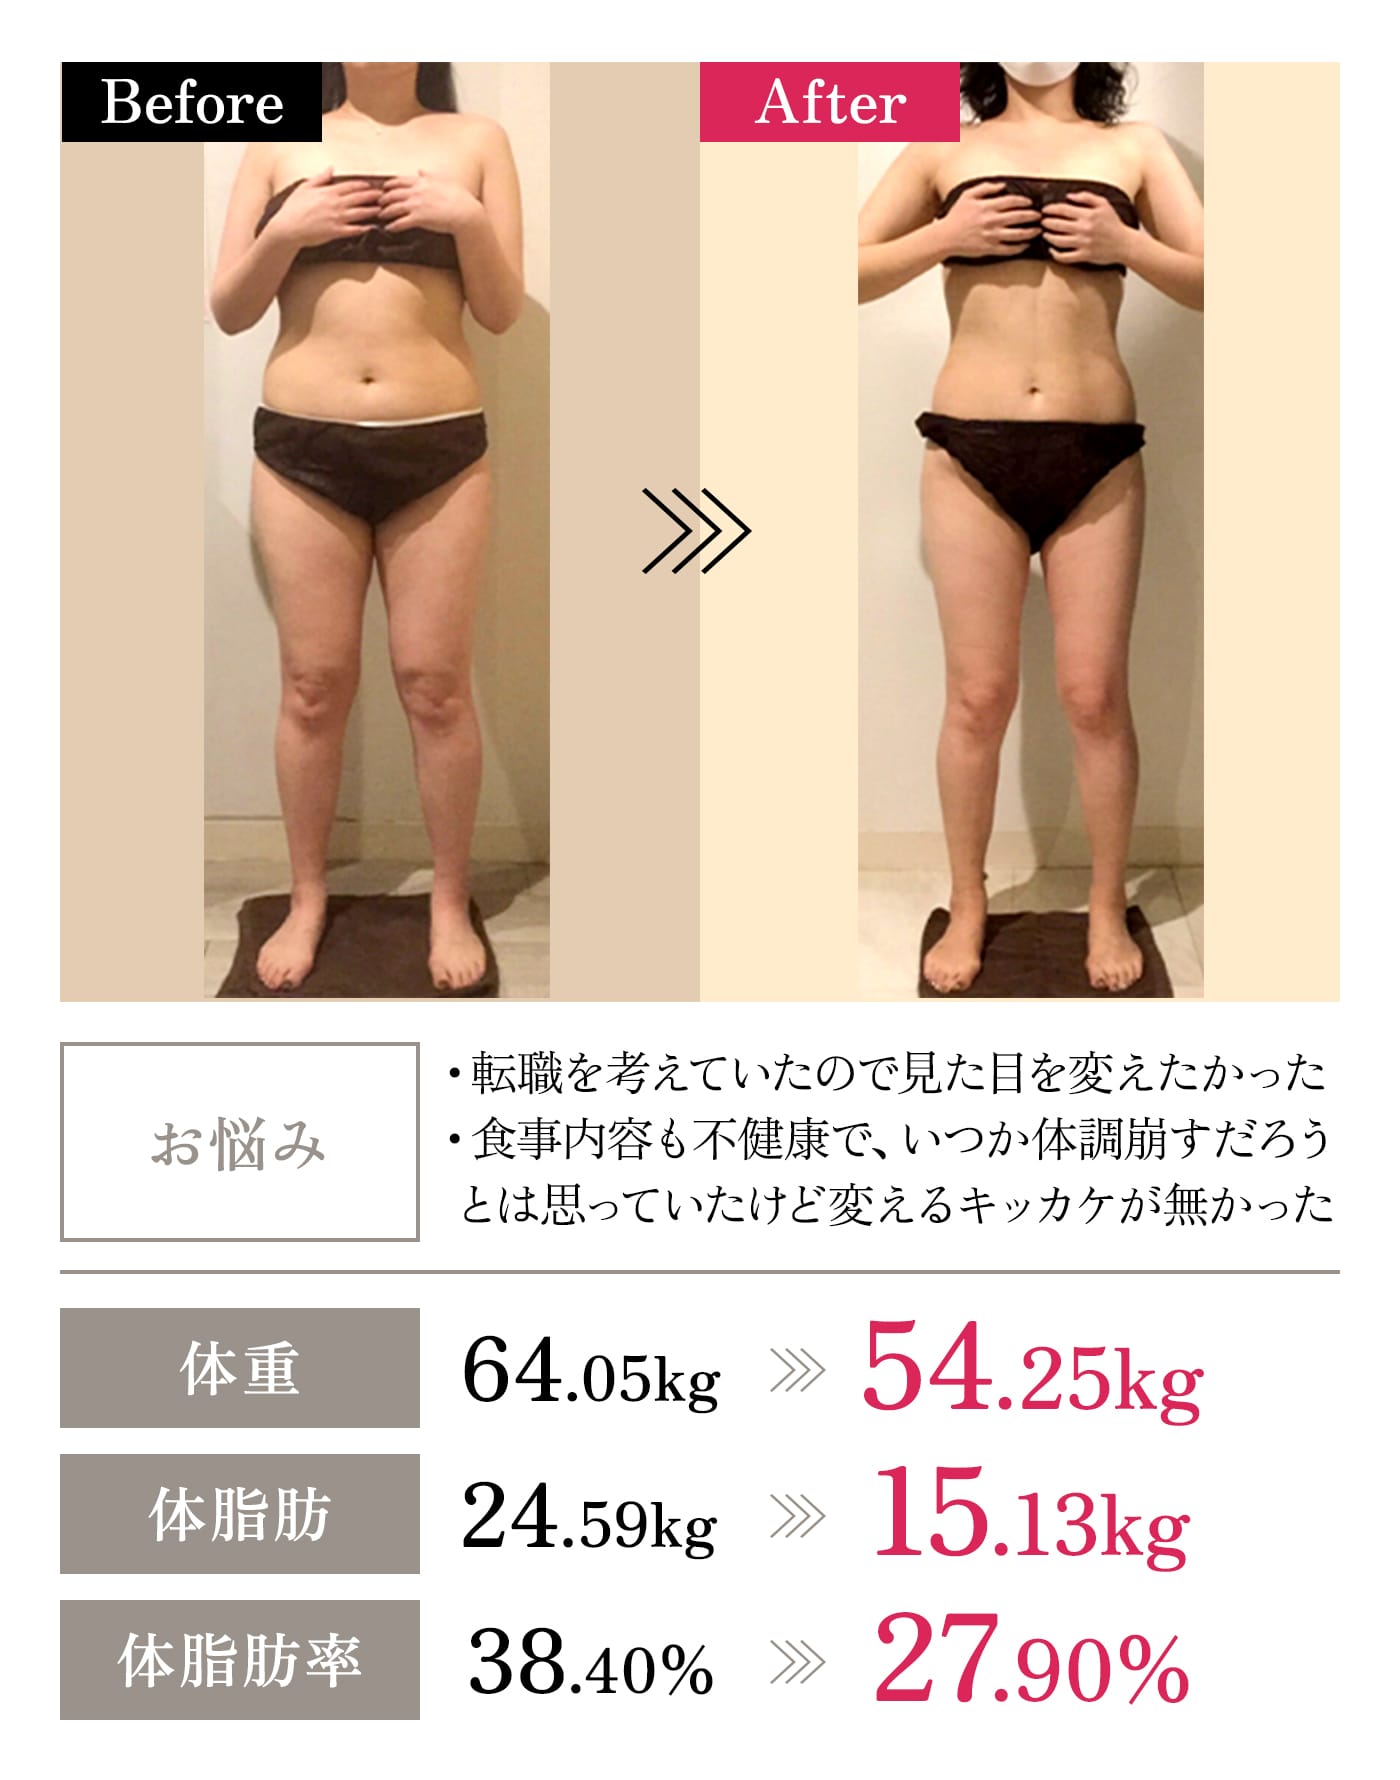 Before→After｜「お悩み」・転職を考えていたので見た目を変えたかった・食事内容も不健康で、いつか体調崩すだろうとは思っていたけど変えるキッカケが無かった｜「体重」64.05kg→54.25kg｜「体脂肪」24.59kg→15.13kg｜「体脂肪率」38.40%→27.90%